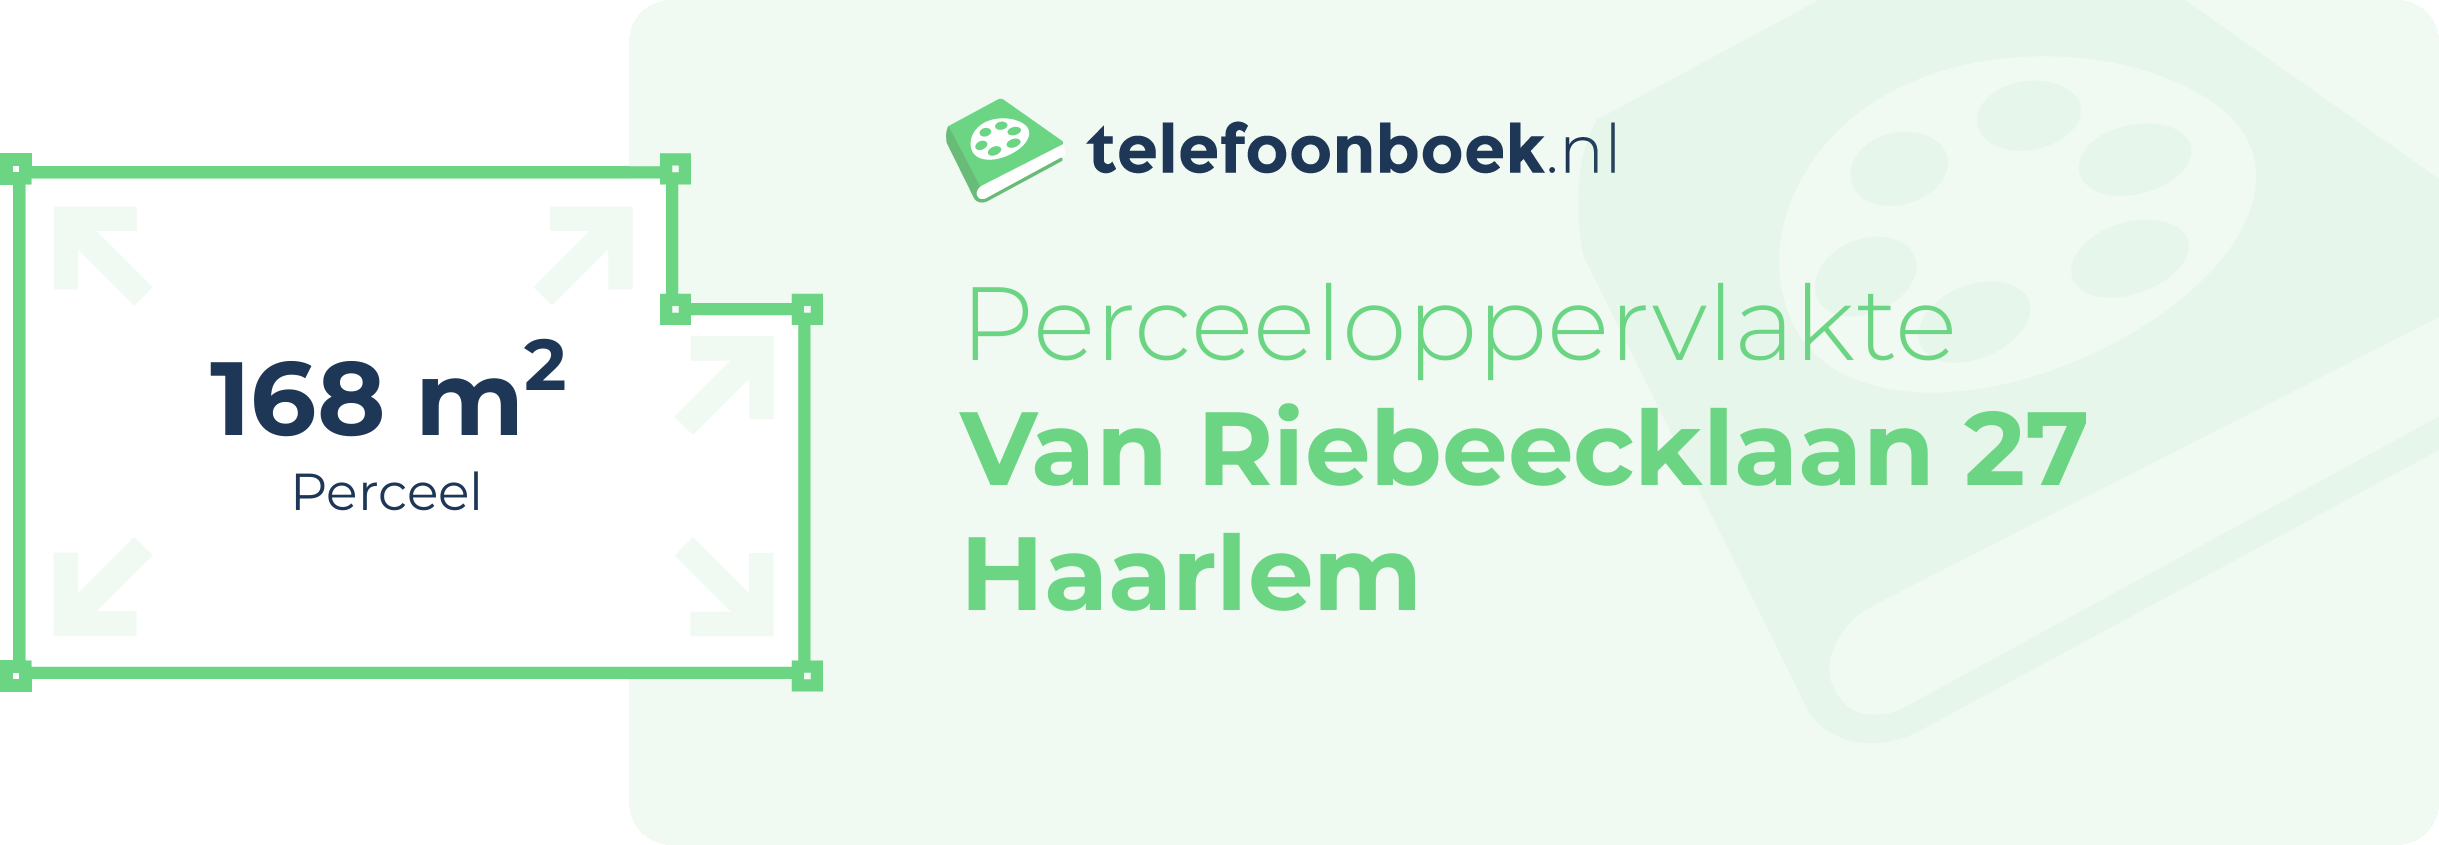 Perceeloppervlakte Van Riebeecklaan 27 Haarlem